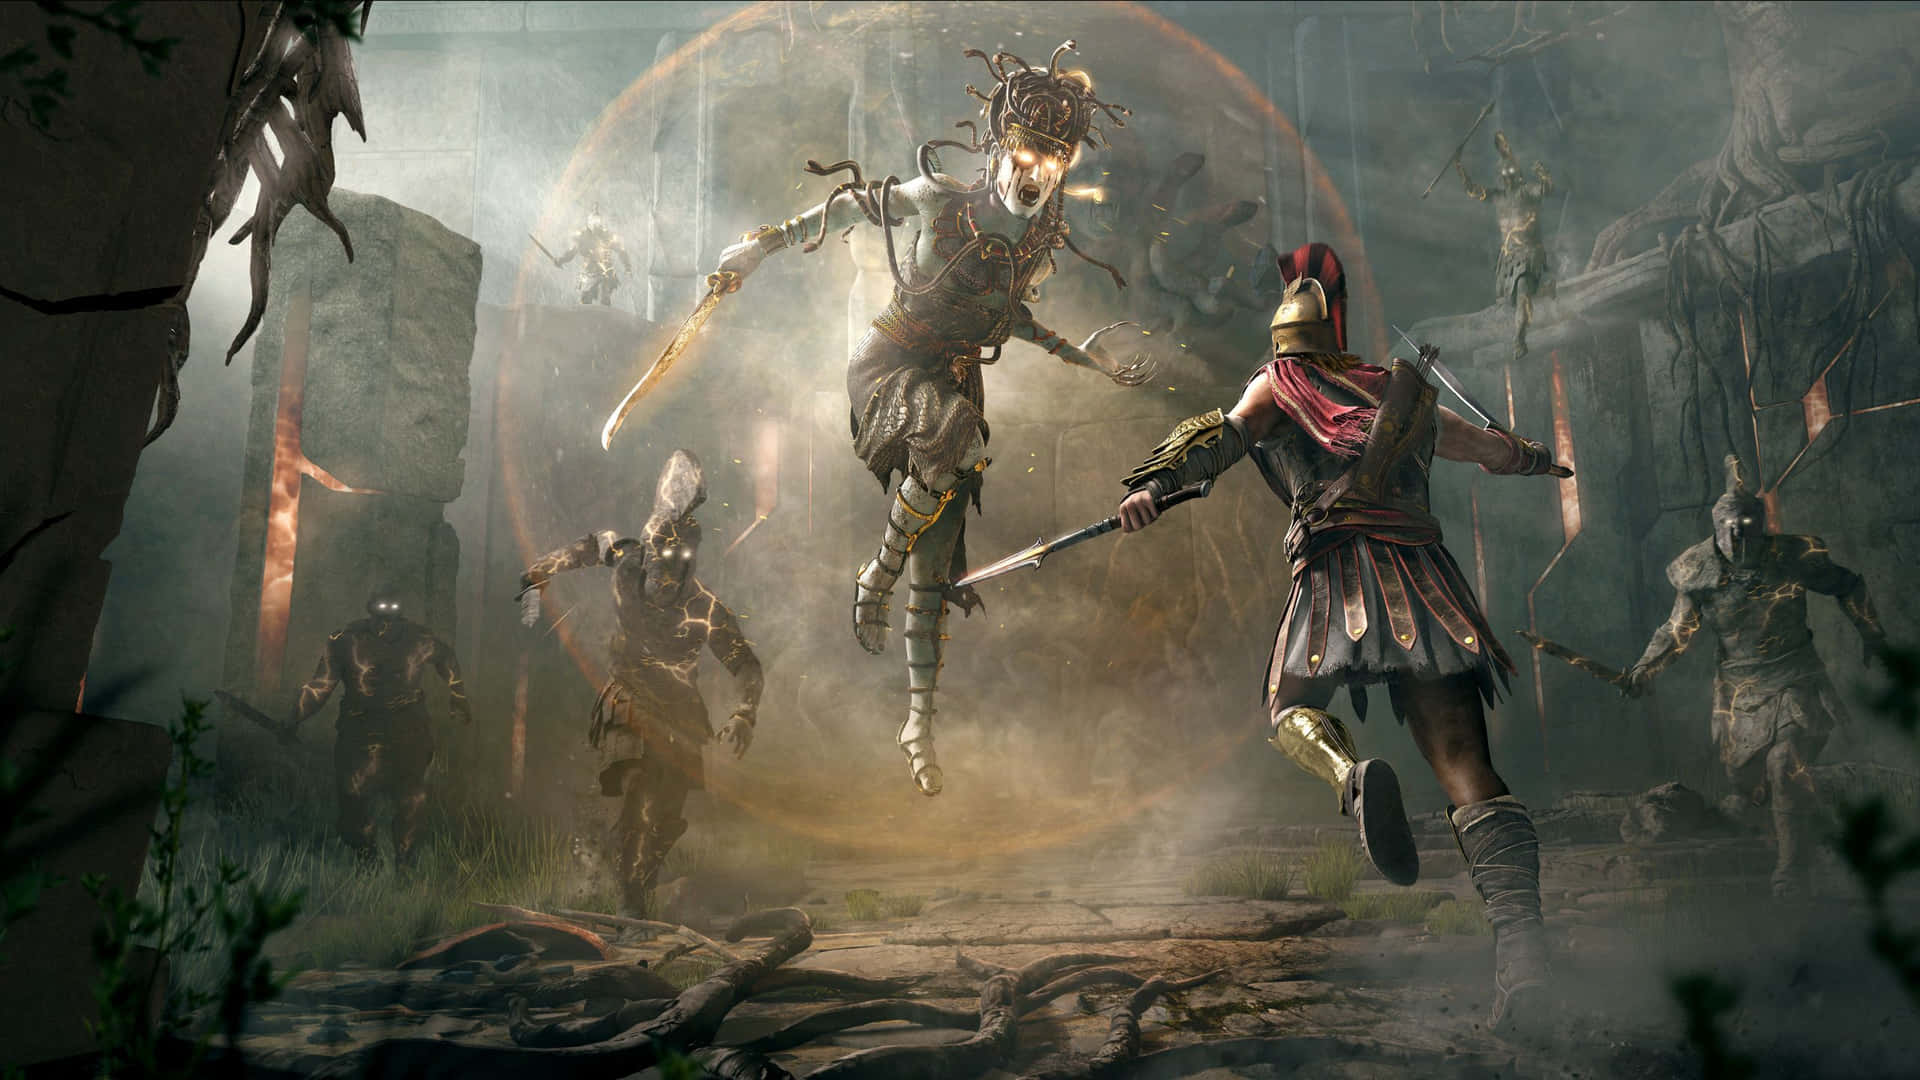 Gorgonernamedusa 1440p Bakgrundsbild För Assassin's Creed Odyssey